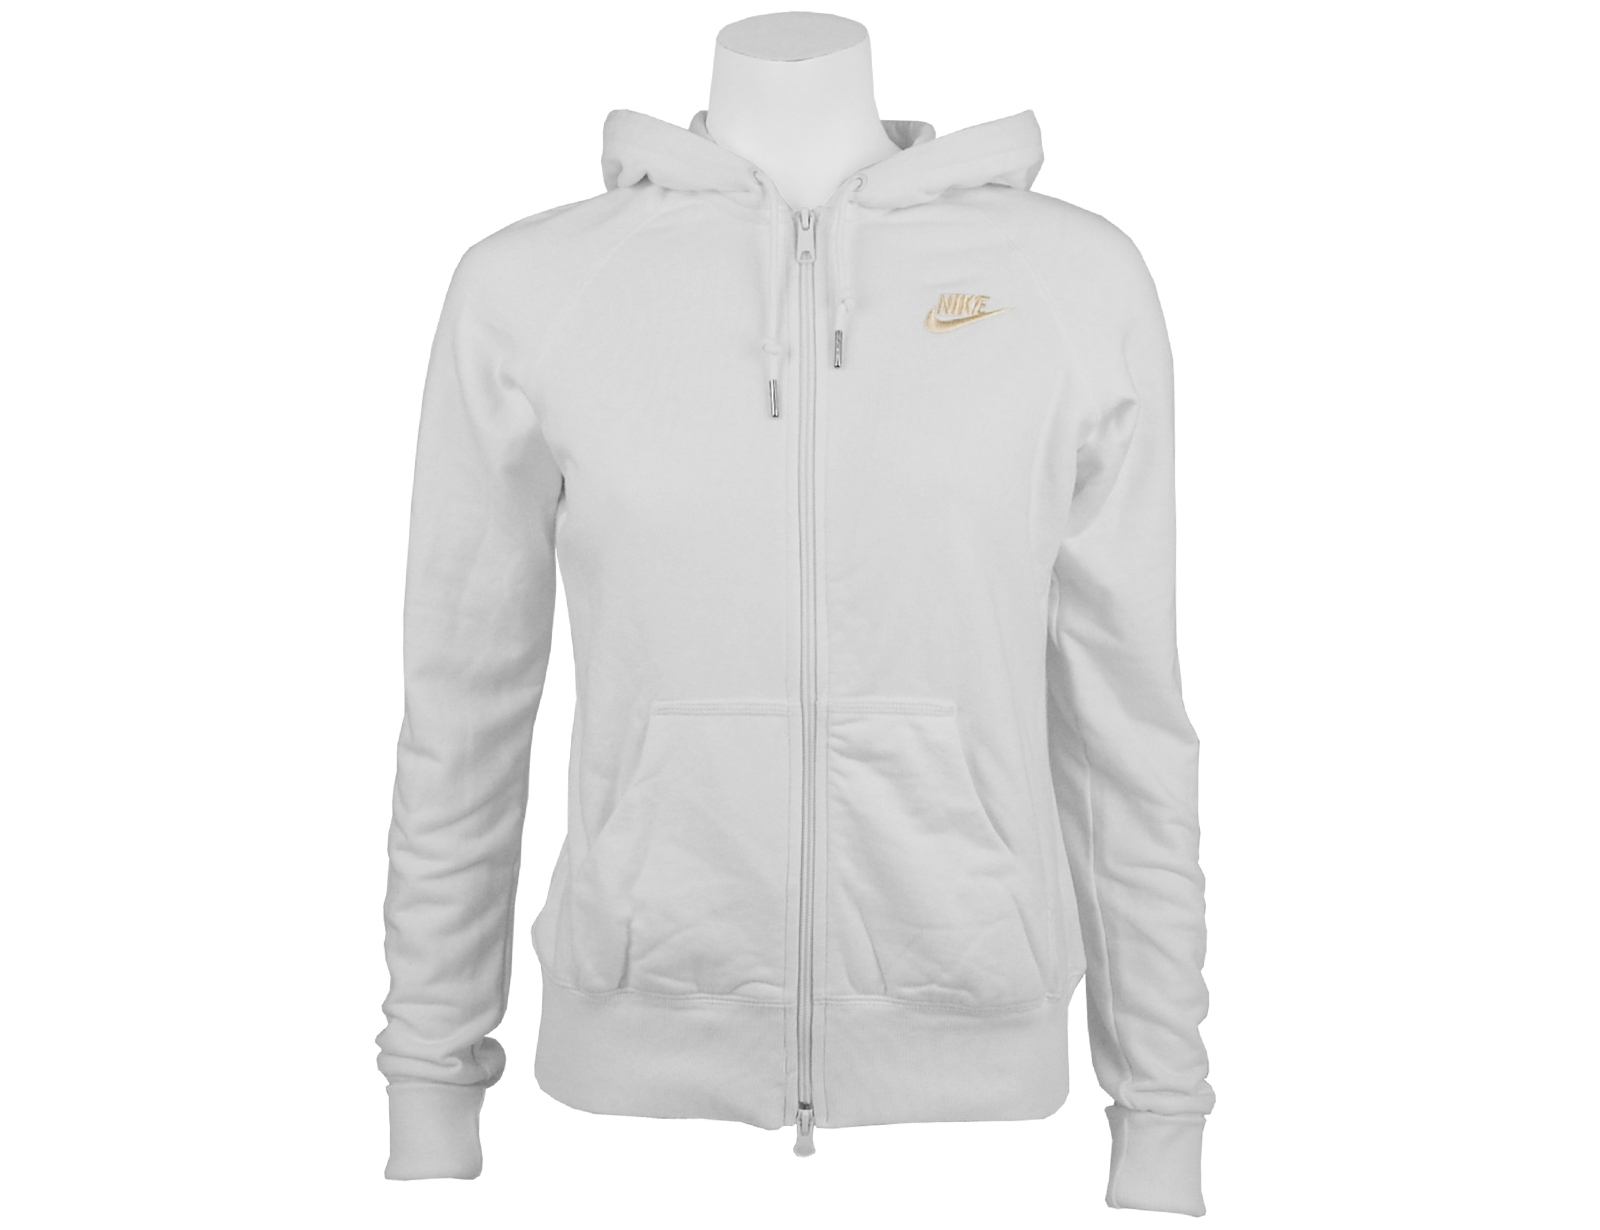 Avantisport - Nike - Womens Full Zip Hooded Sweat - White/white Gold